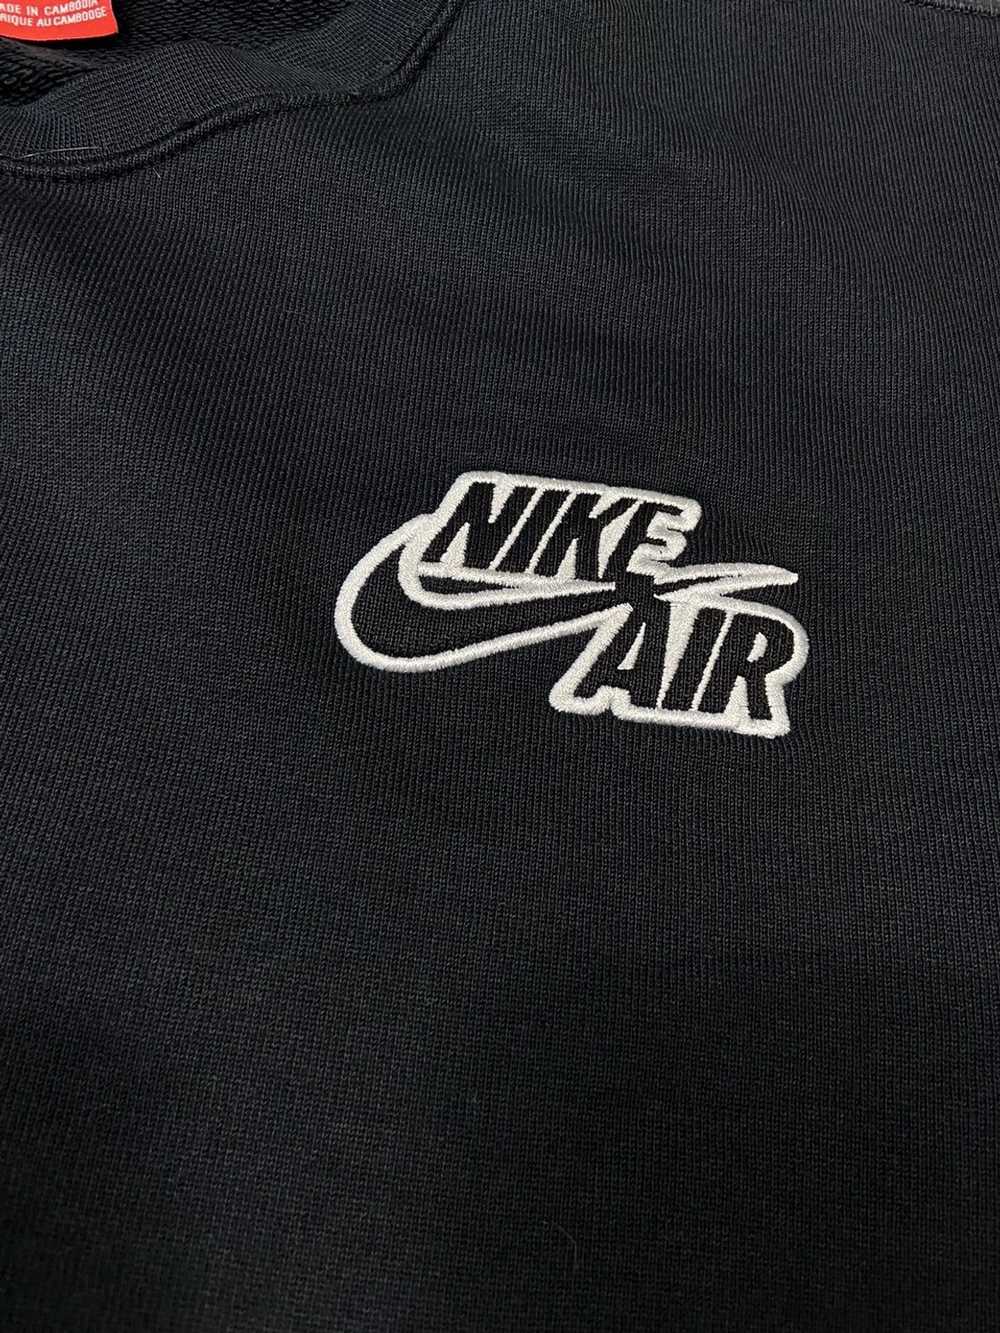 Nike × Rare × Streetwear Nike air vintage tee off… - image 3